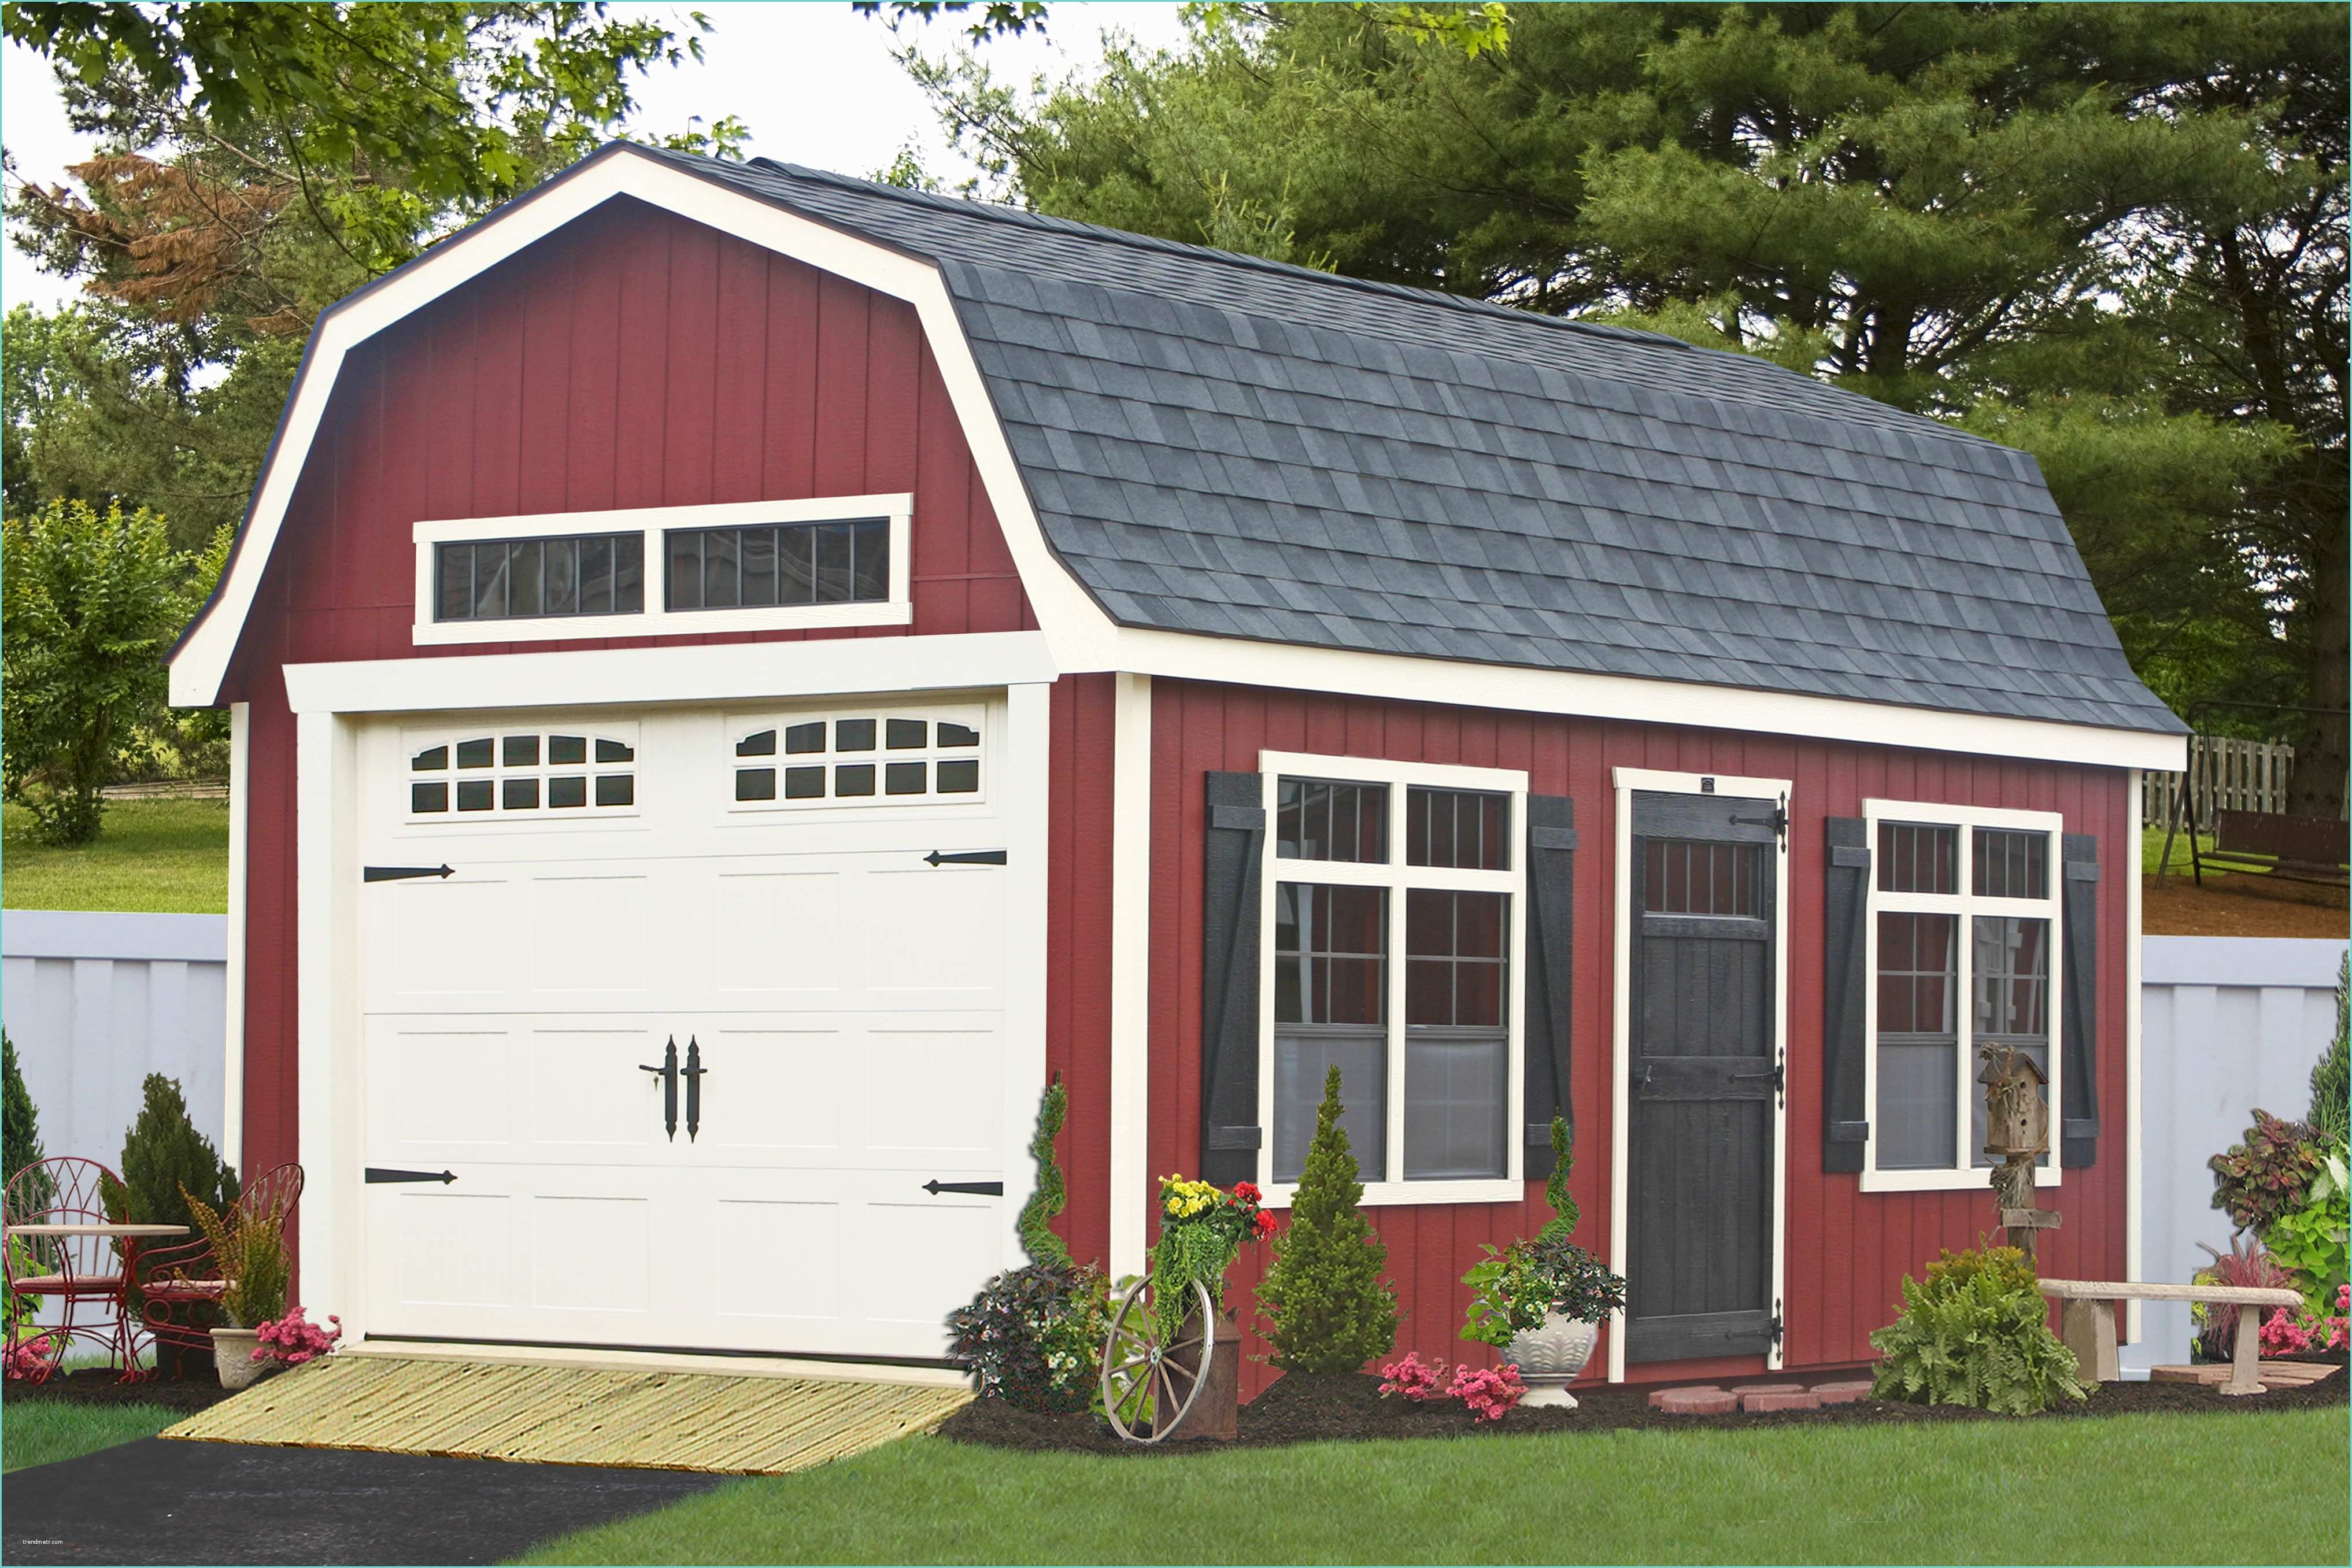 Premier Garage Houston Shed Home Office Birdhouse Designs Amish Storage Sheds